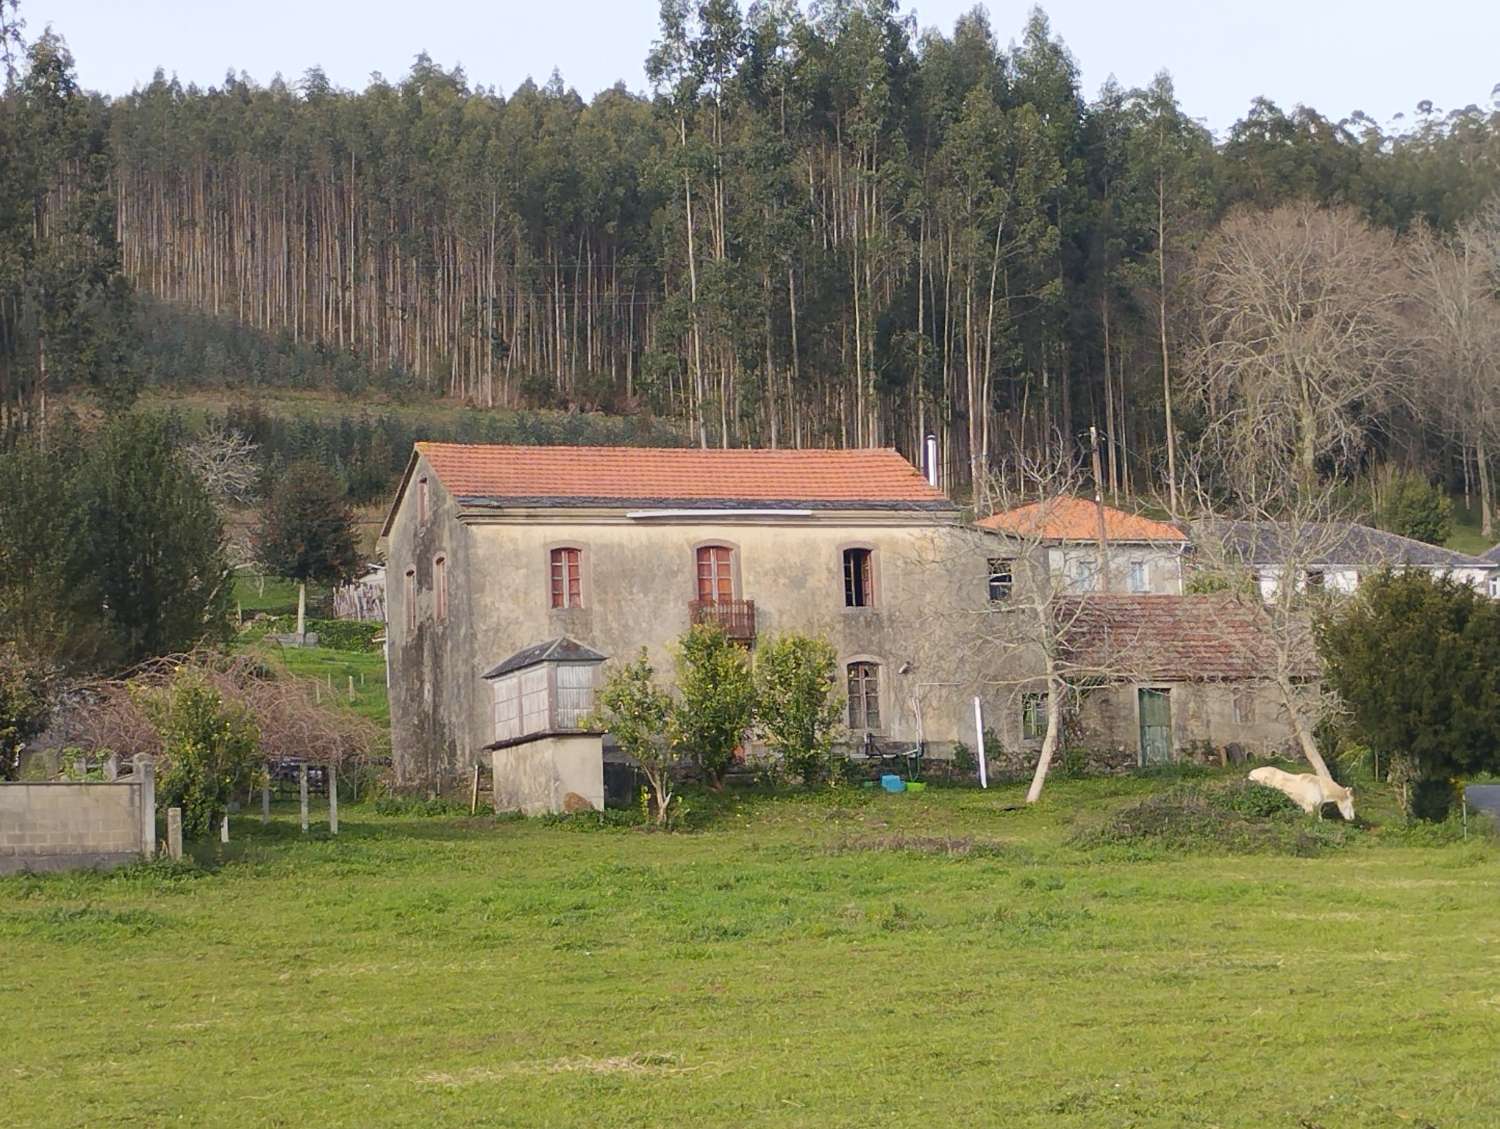 En venta casa para rehabilitar en Cerdido ( A Coruña).